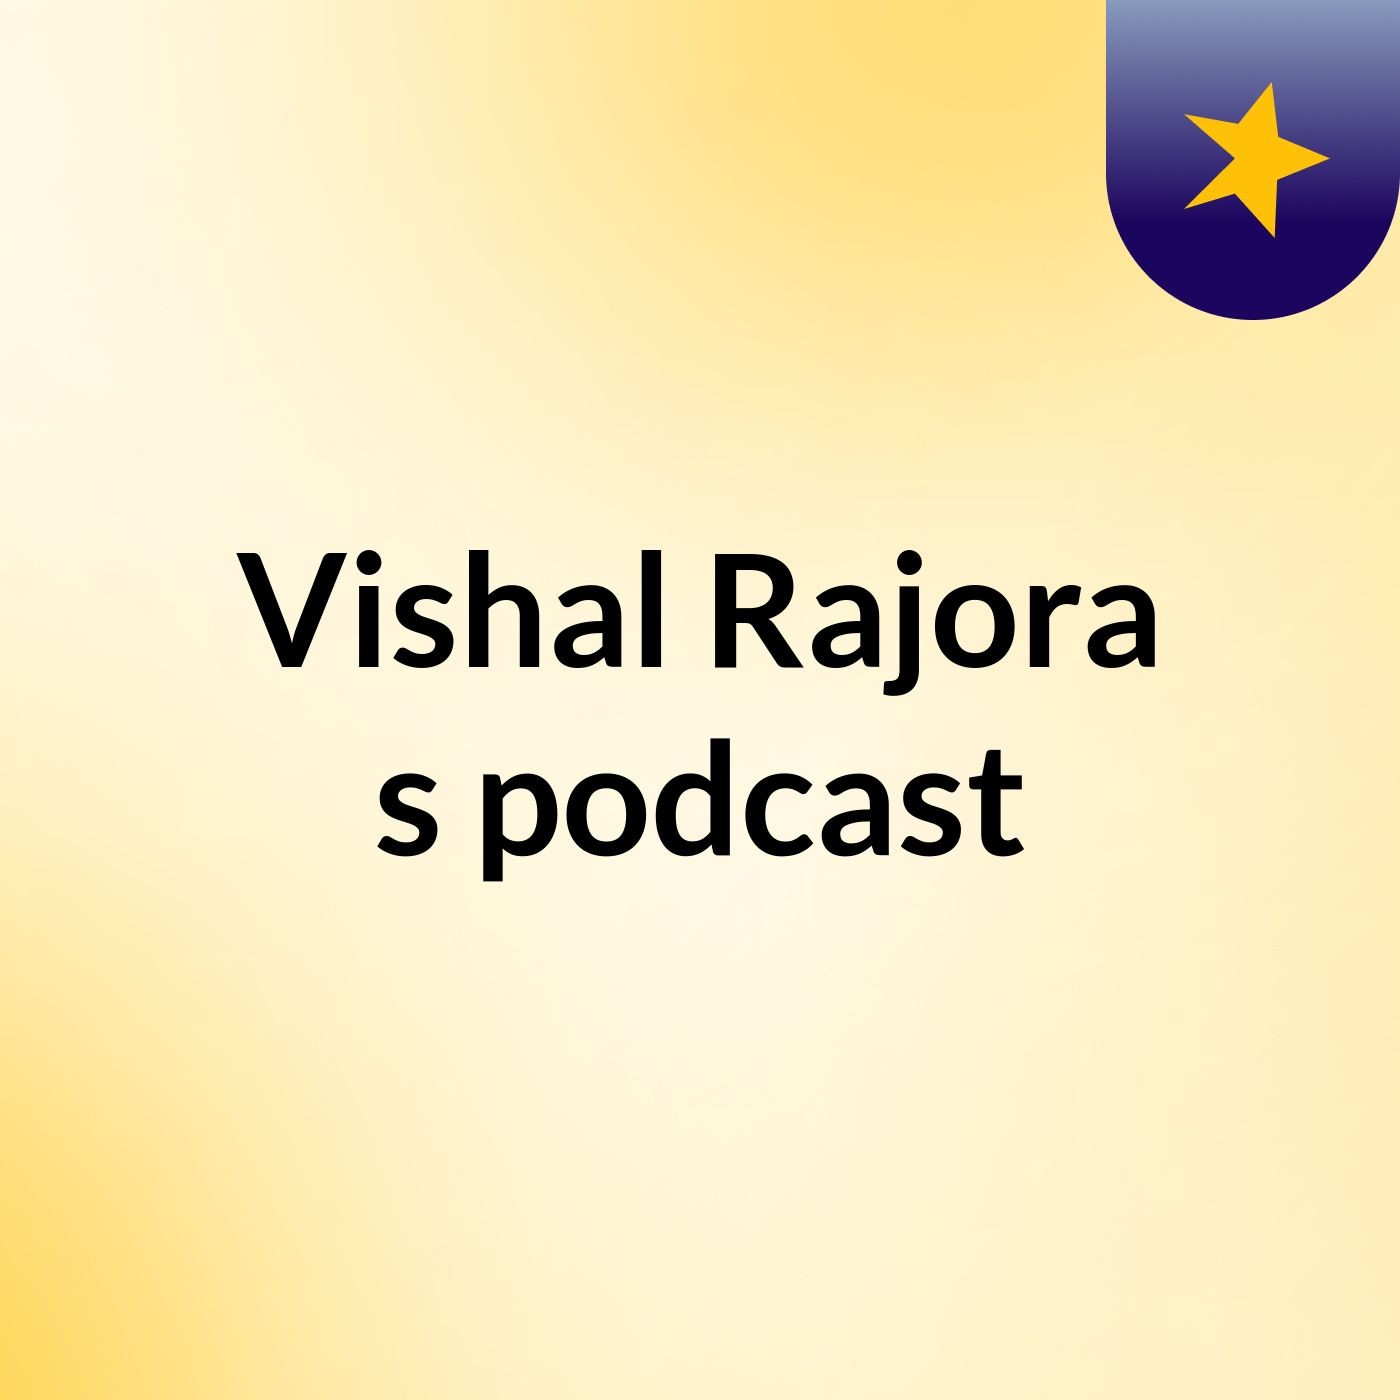 Vishal Rajora's podcast